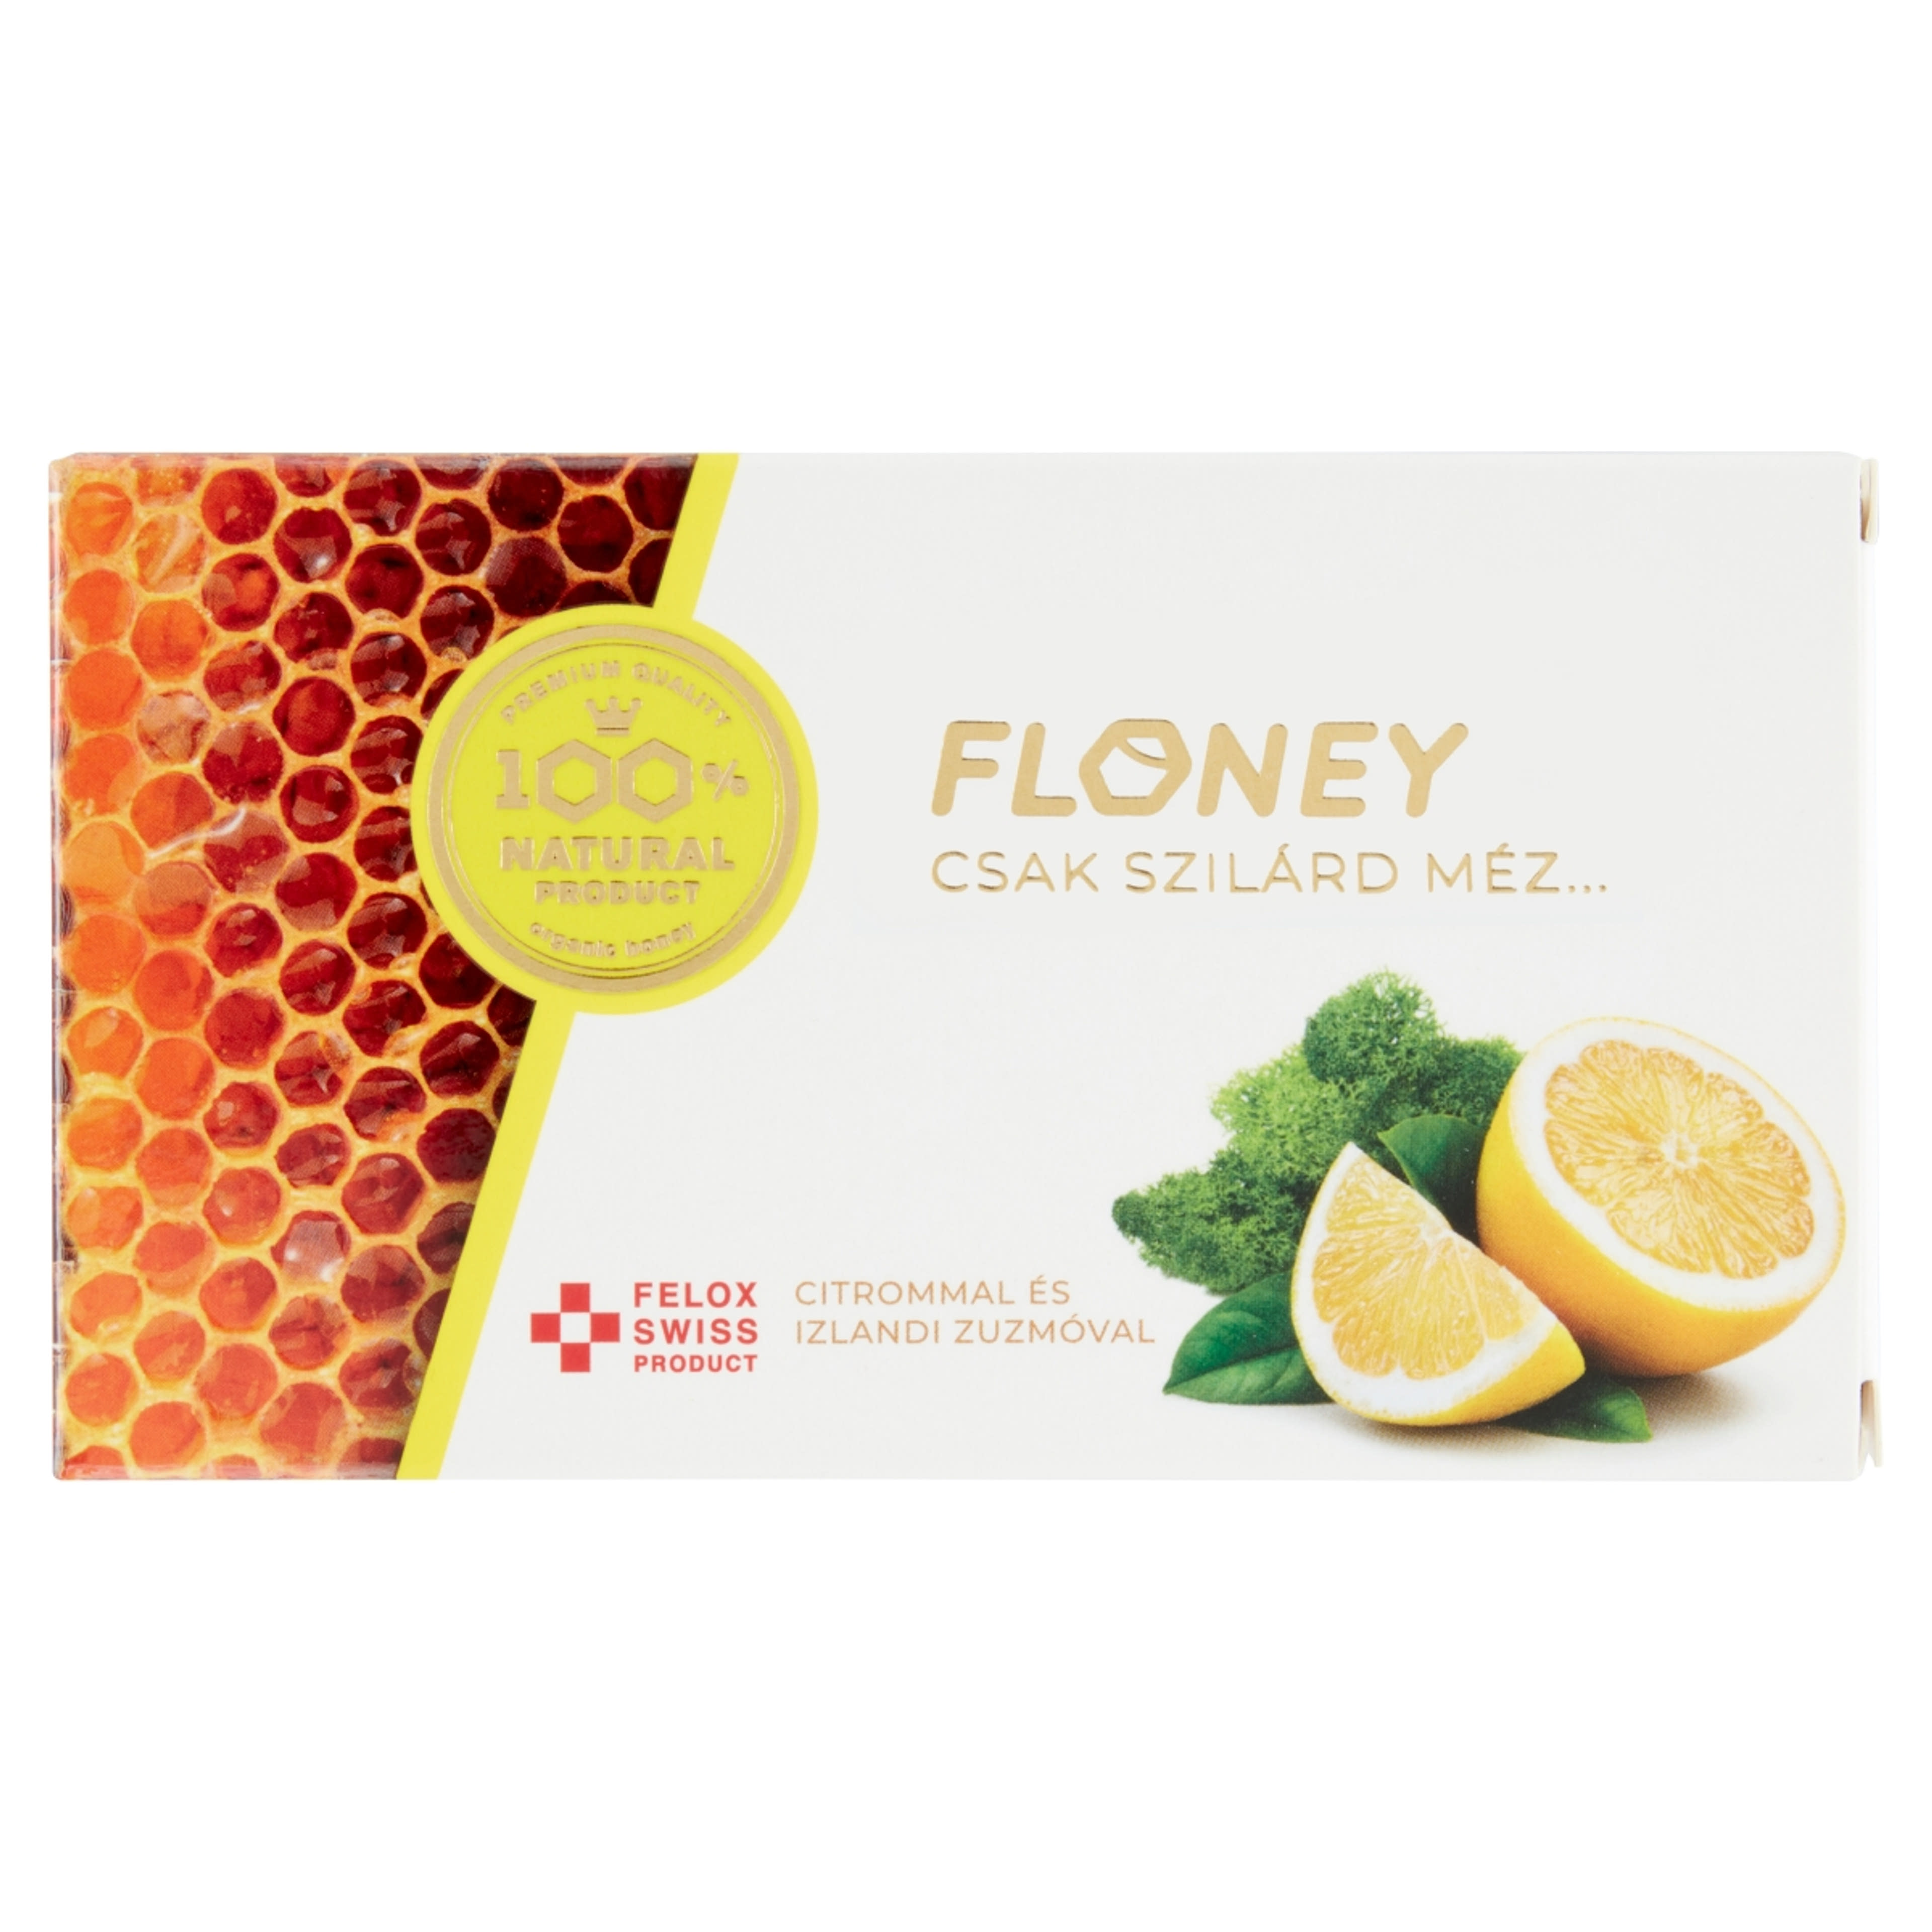 Floney citrom mézpasztilla 18 db - 38 g